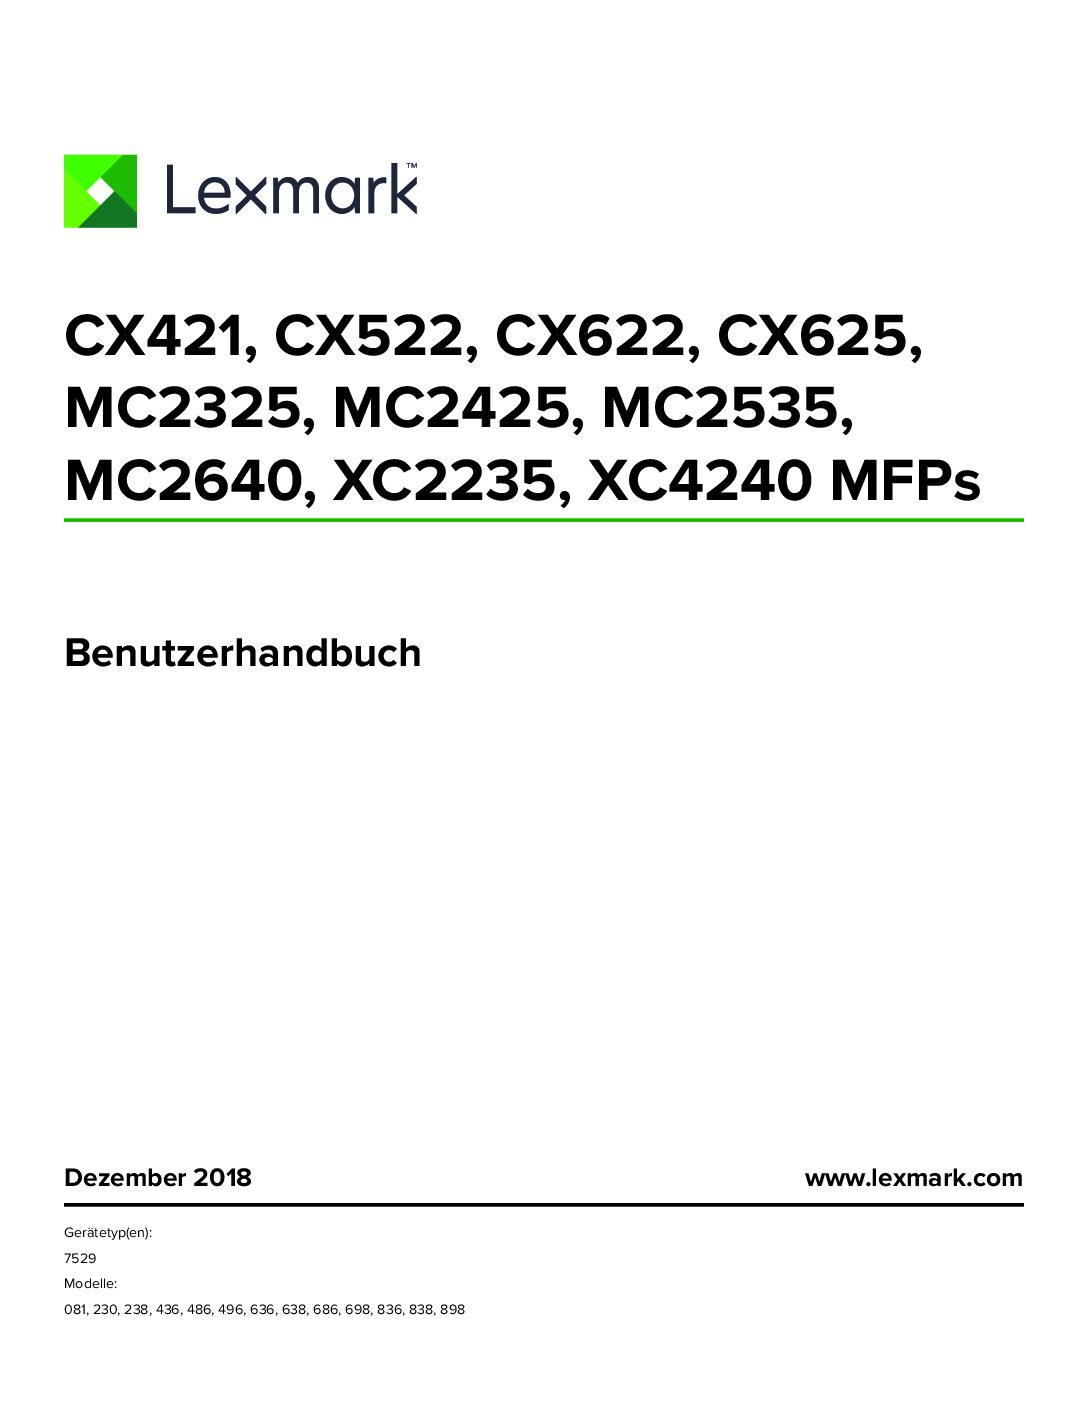 Lexmark CX625 Bedienungsanleitung